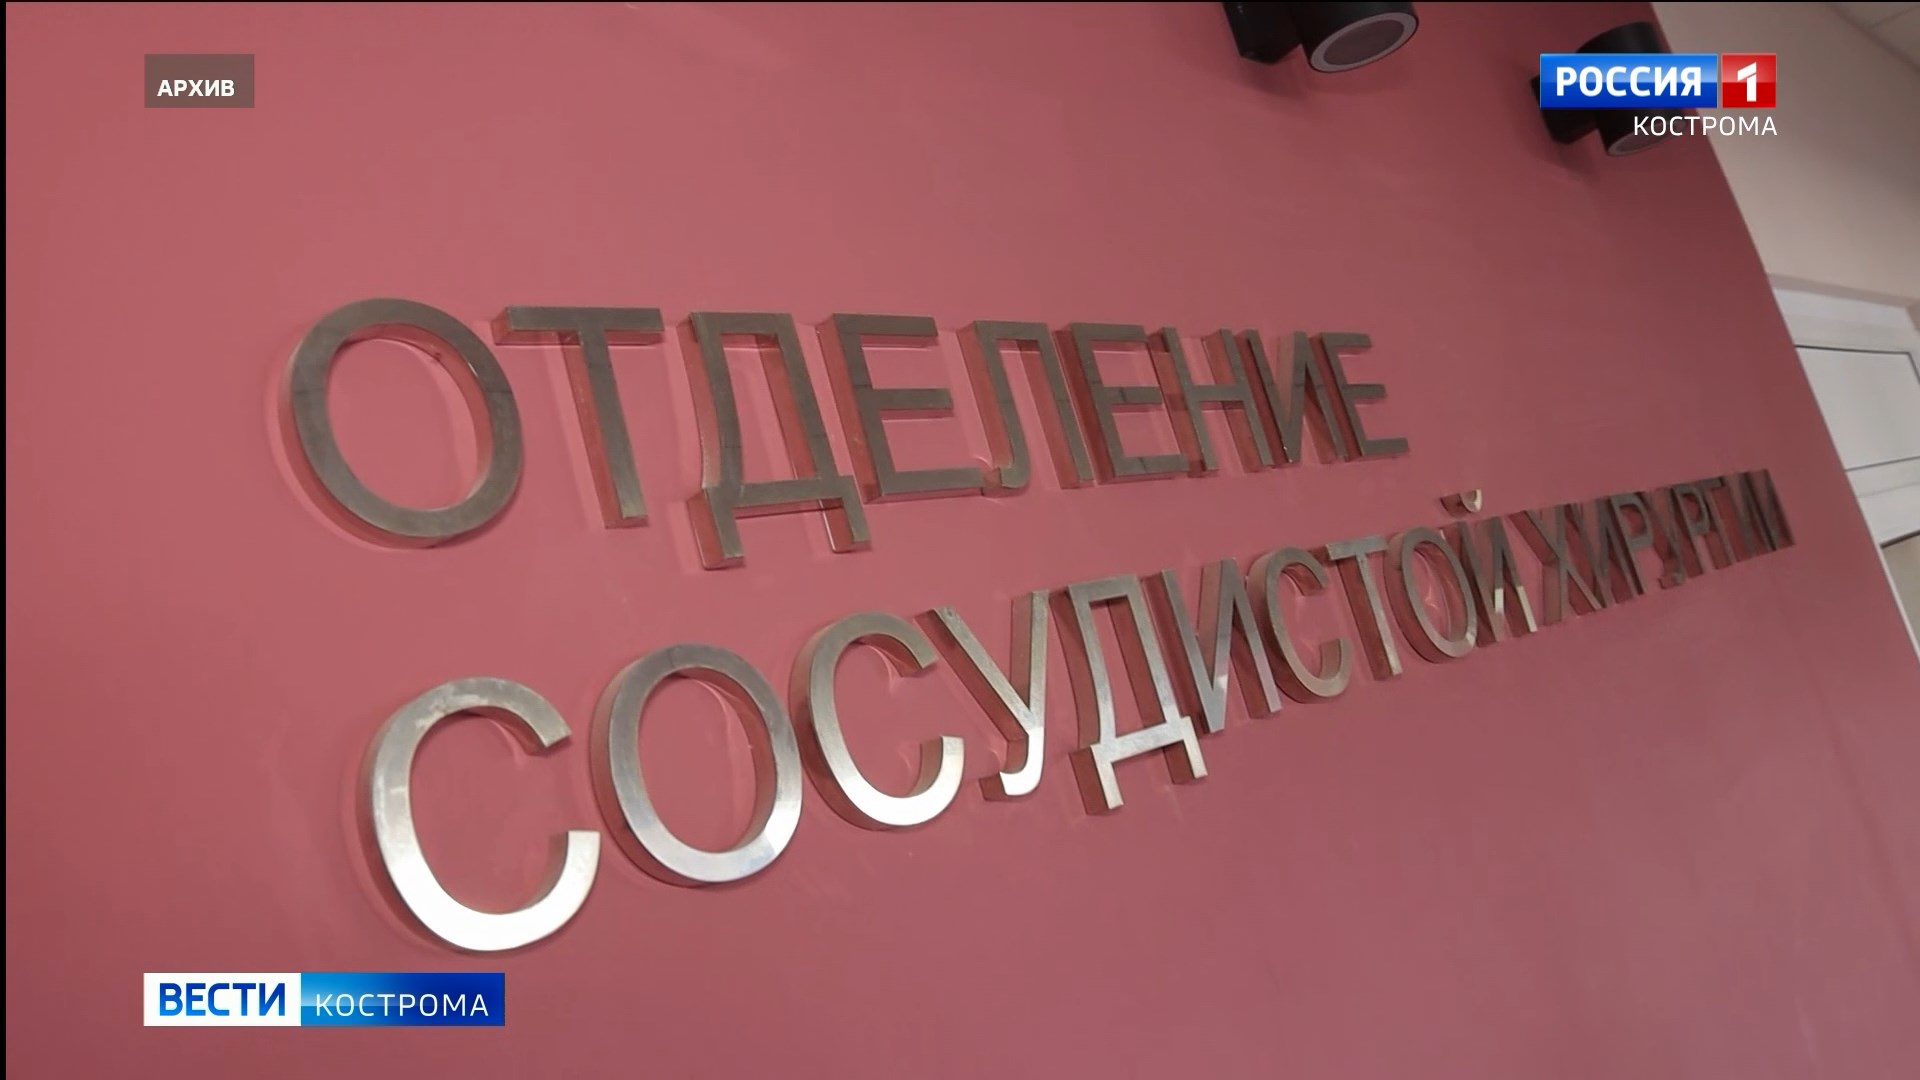 Работу сосудистого отделения Костромской областной больницы проверит специальная комиссия